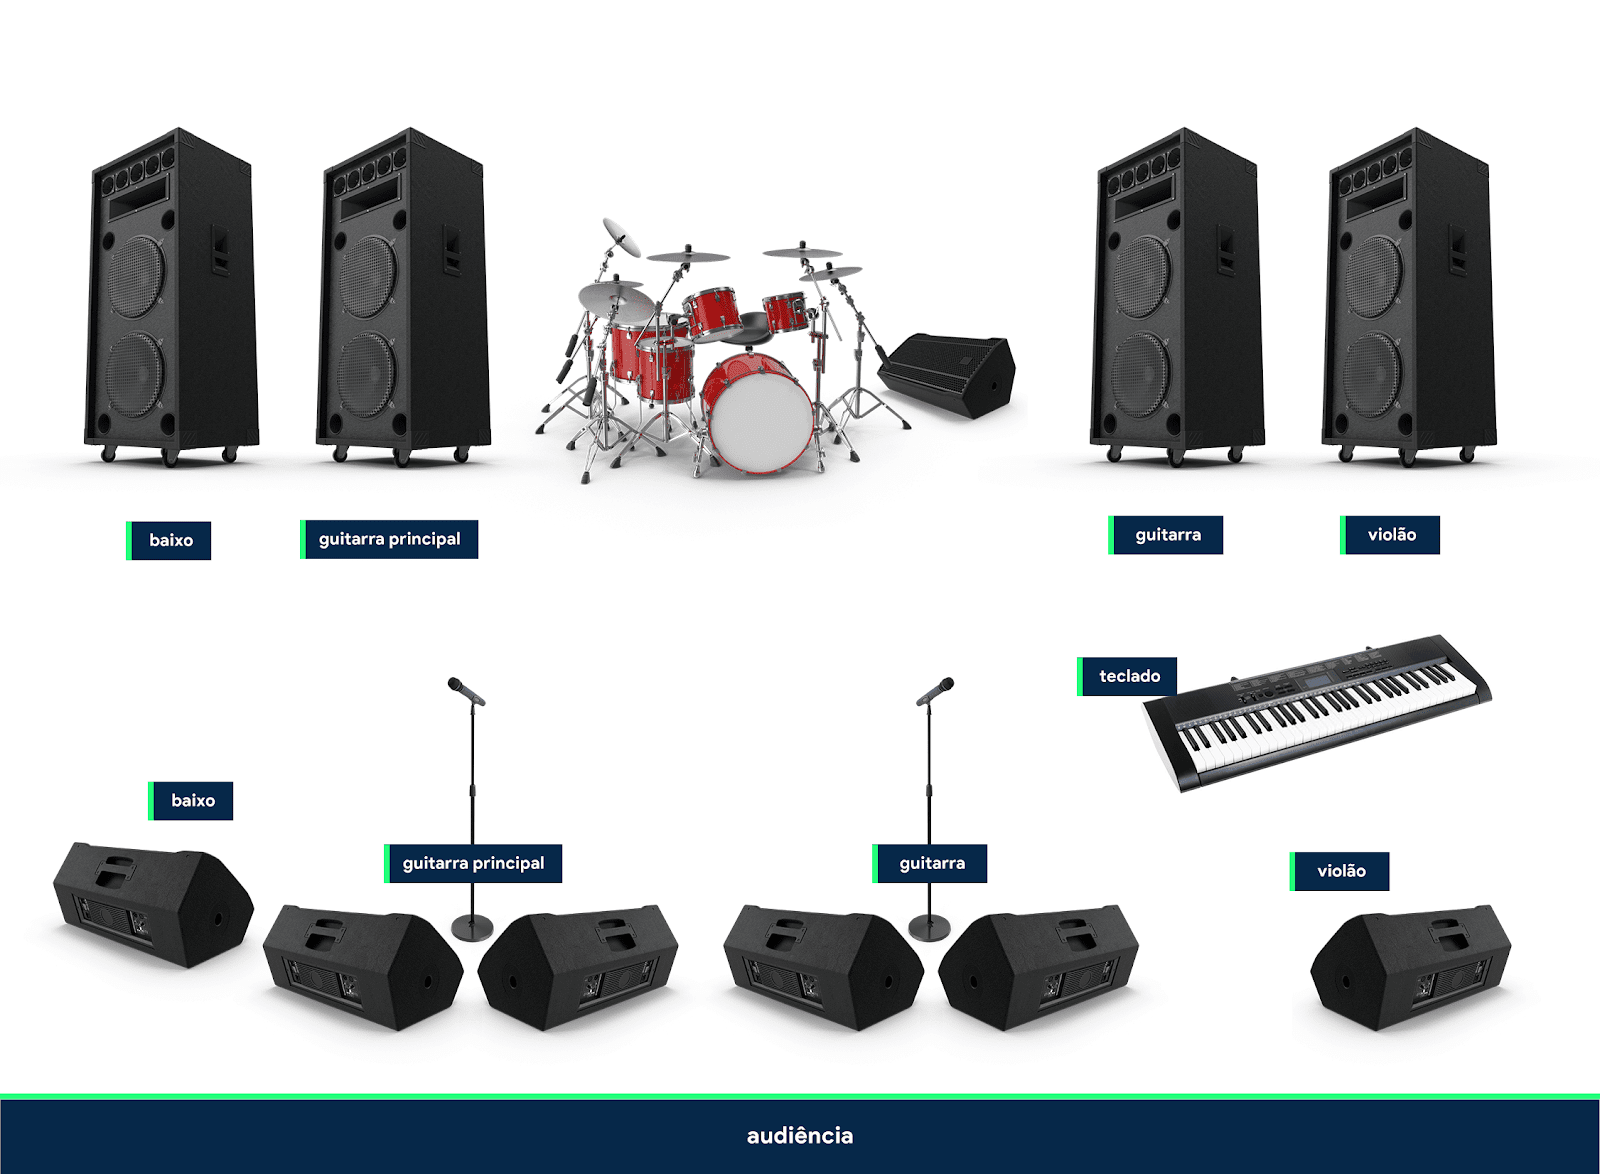 Imagem com diversos monitores de áudio (caixas de som). Cada um possui uma legenda indicando para qual instrumento é indicado.